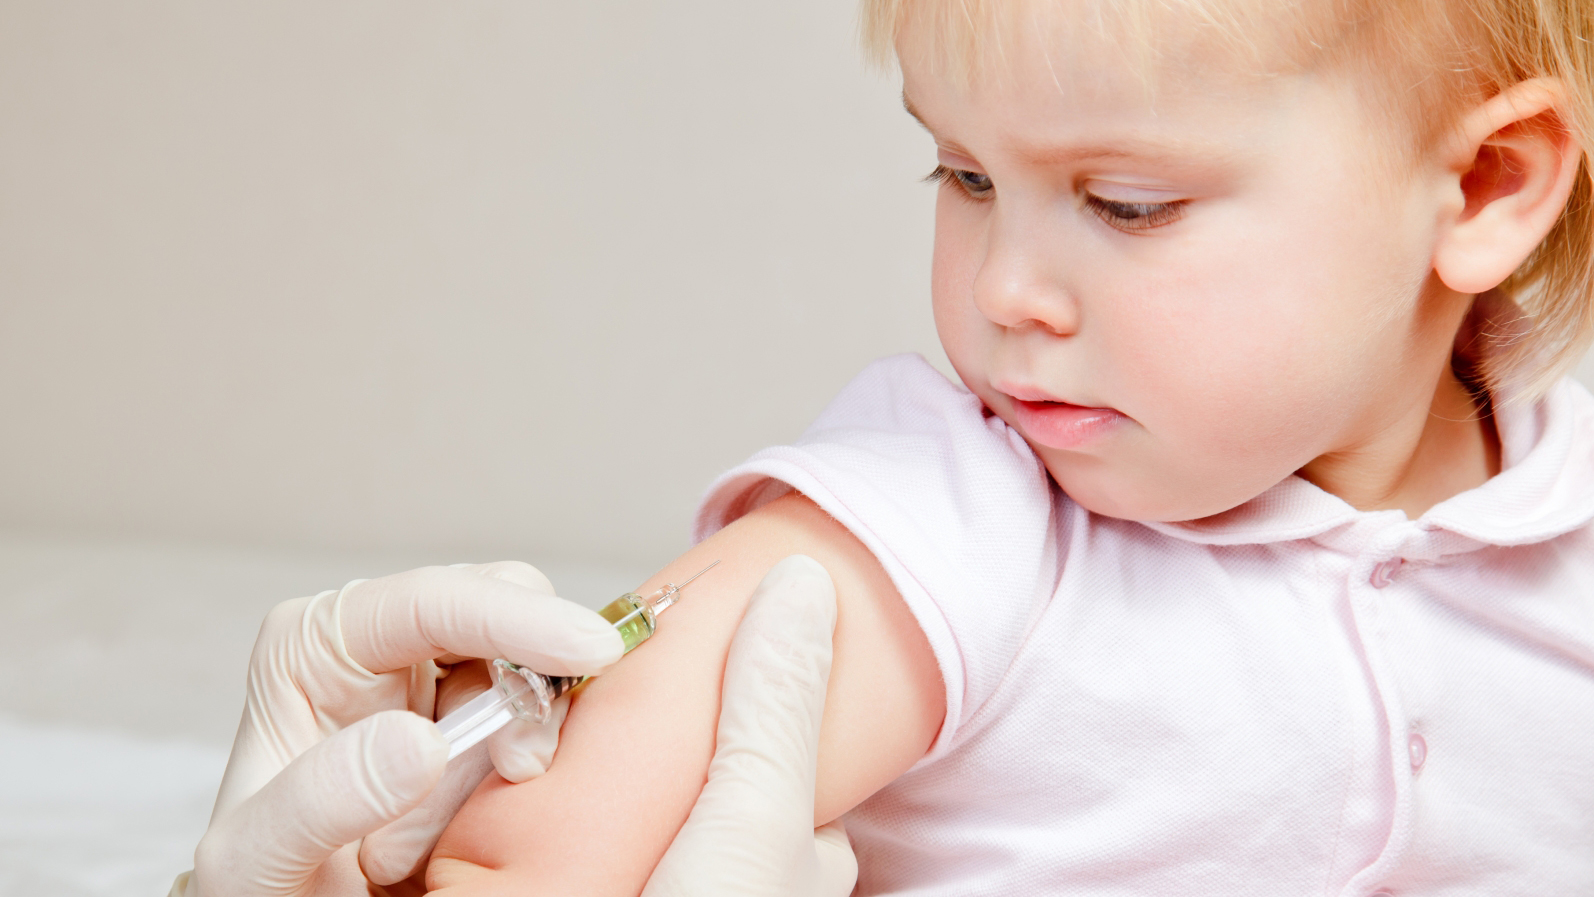 تطعيم الاطفال